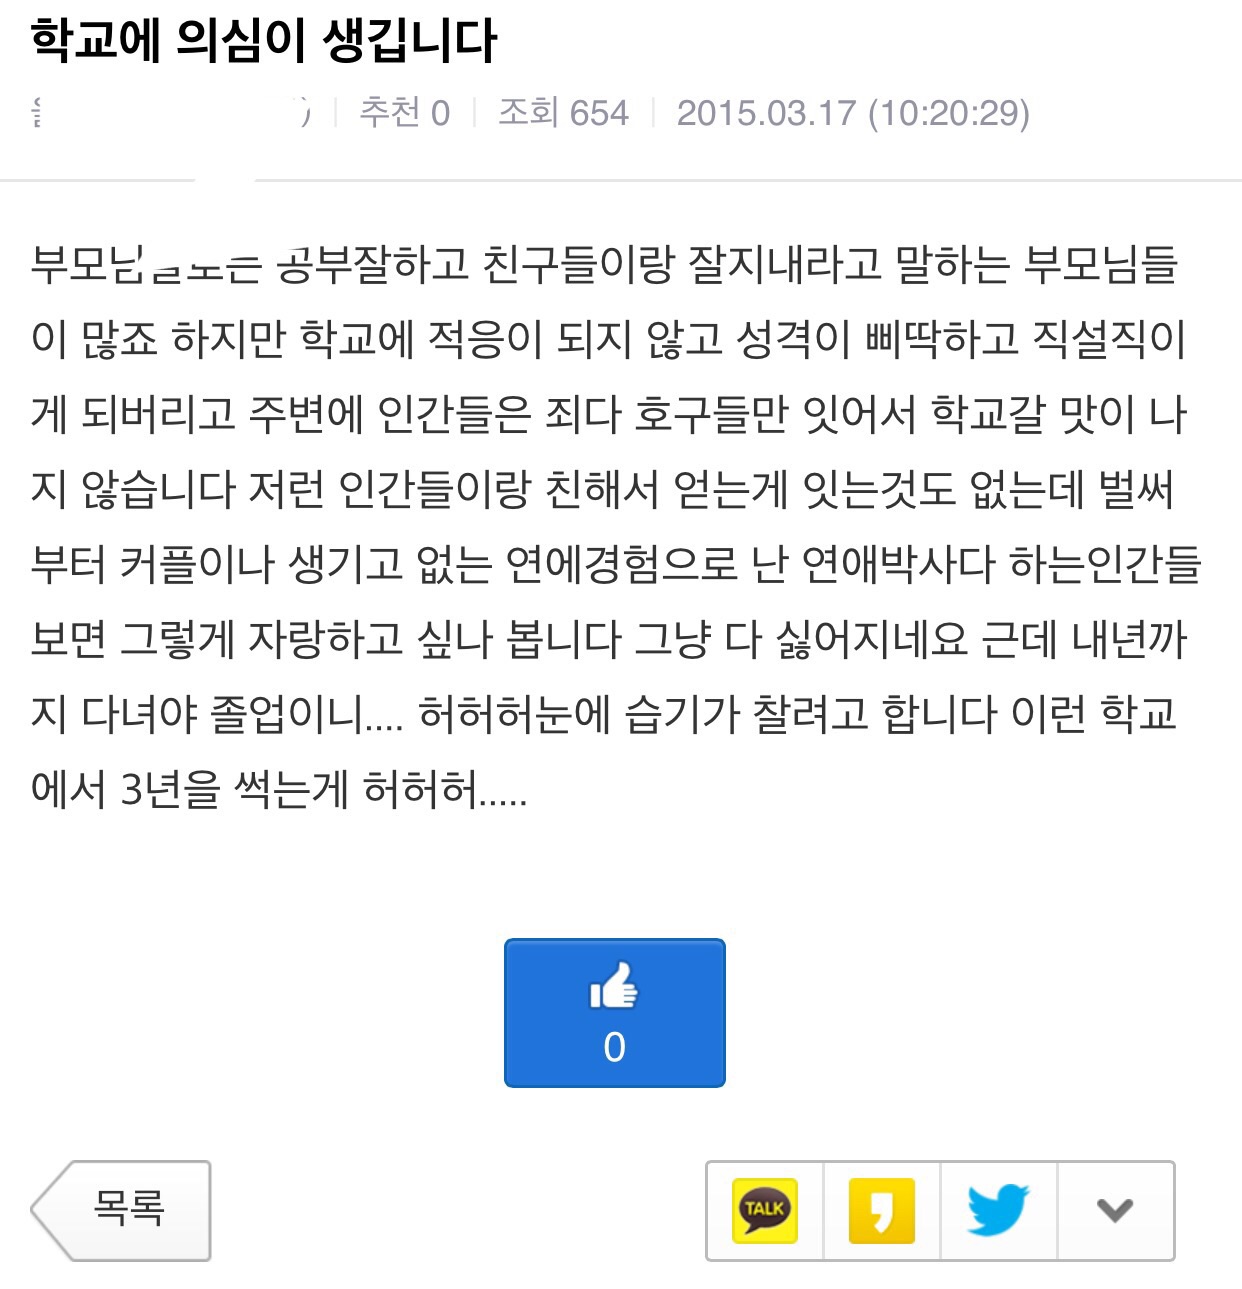 image.jpg : 루리웹의 흔한 학교부적응자.jyp